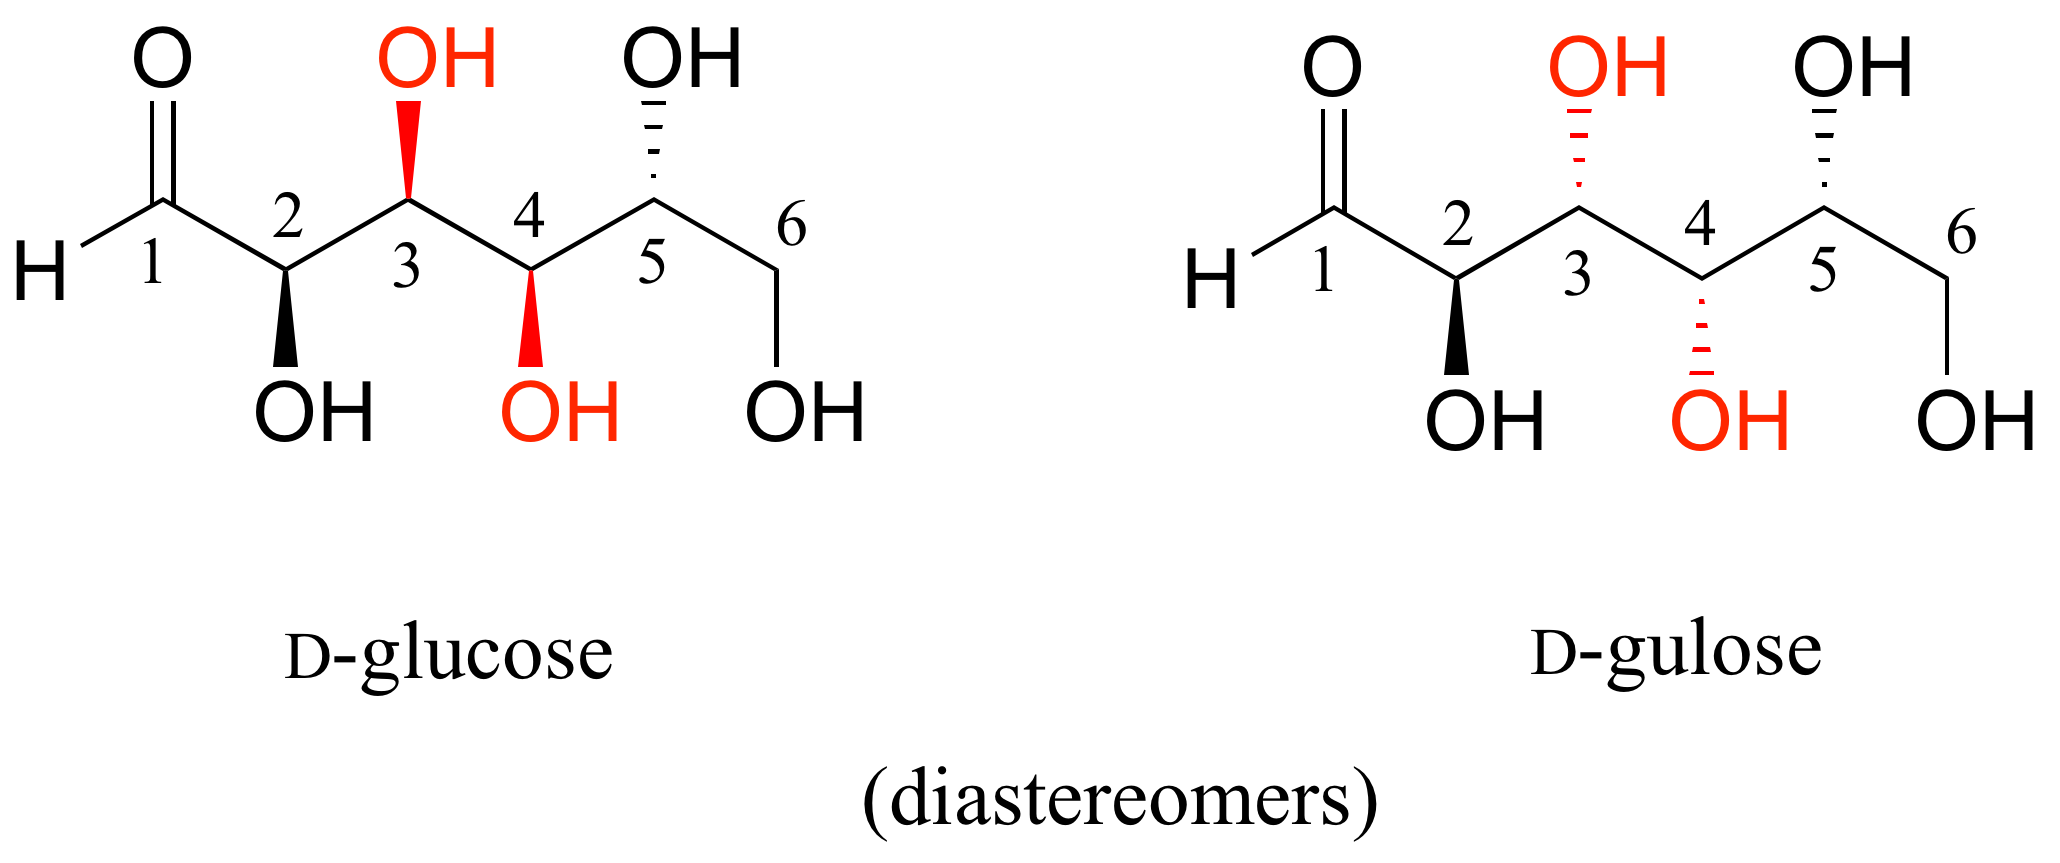 Molécula de D-glucosa con grupos hidroxi unidos a los carbonos 3 y 4 en cuñas y es diastereómero, D-gulosa con grupos hidroxi en los carbonos 3 y 4 en guiones.